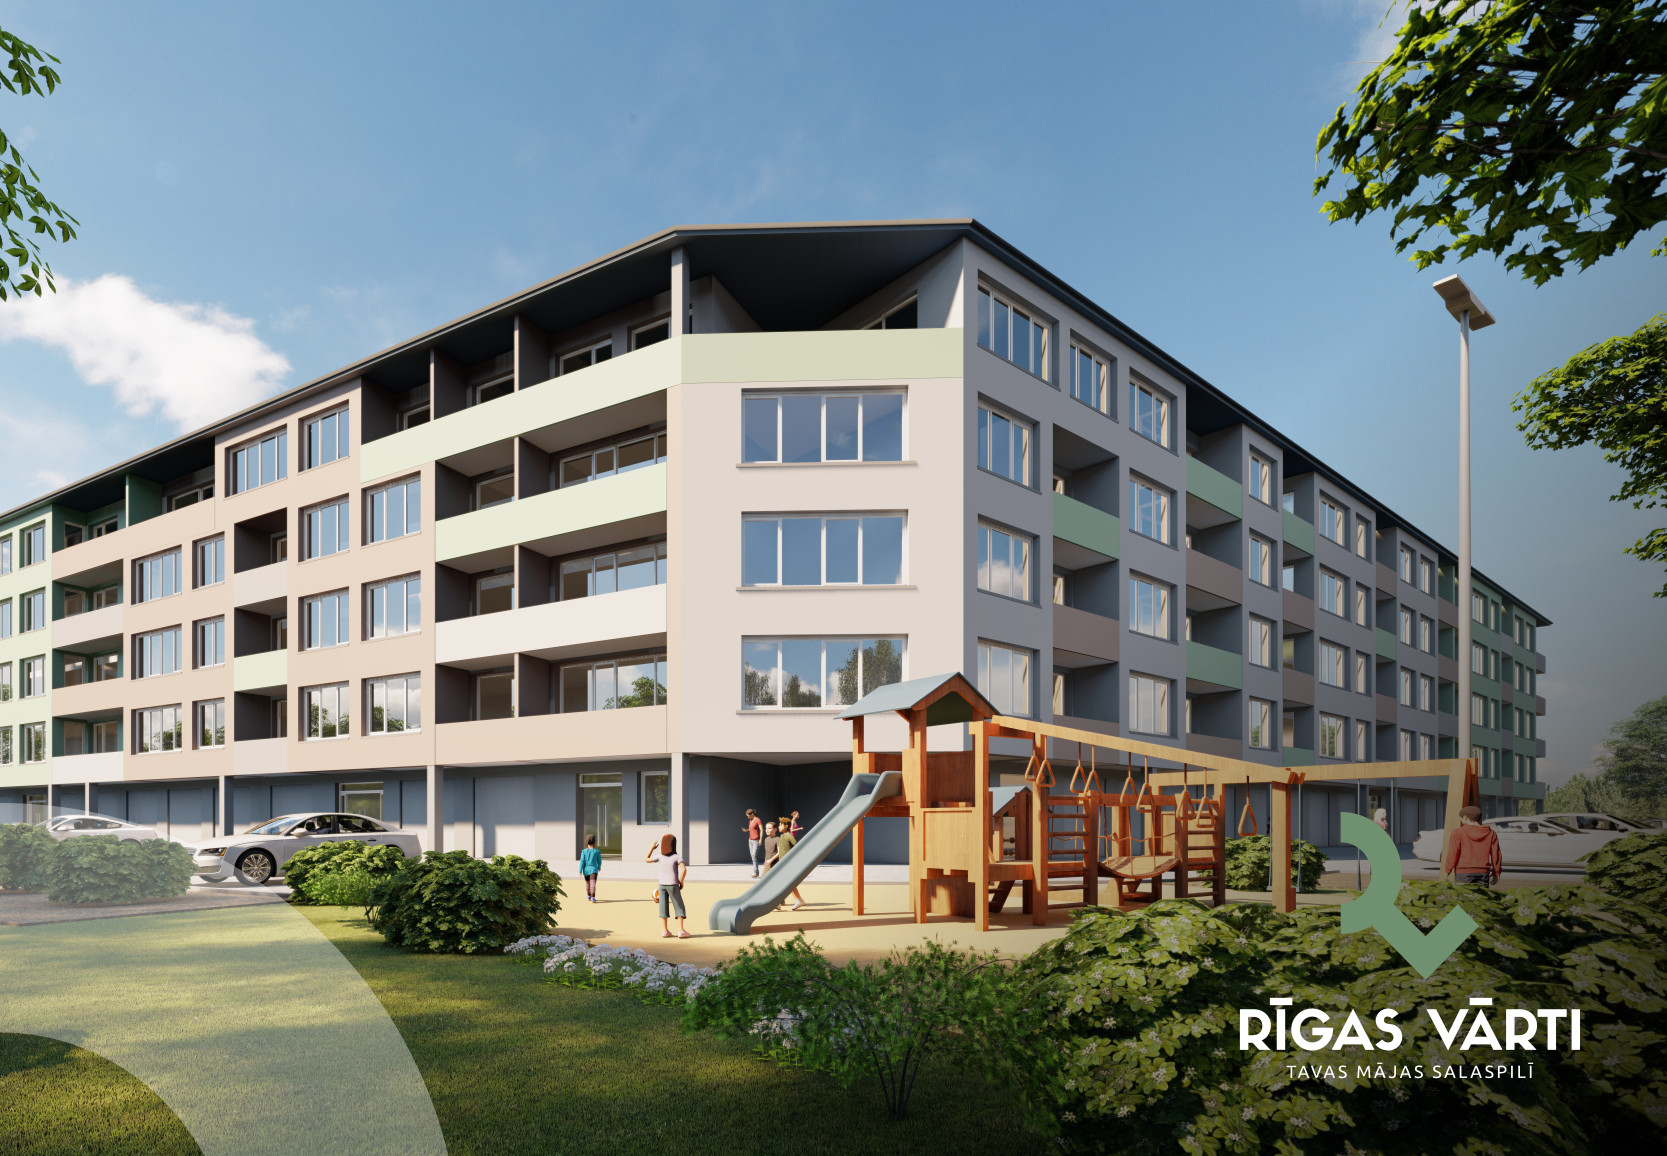 ARCO REAL ESTATE noslēdz sadarbības līgumu par Rīgas Vārtu dzīvokļu pārdošanu - Nekustamo īpašumu ziņas - City24.lv nekustamo īpašumu sludinājumu portāls